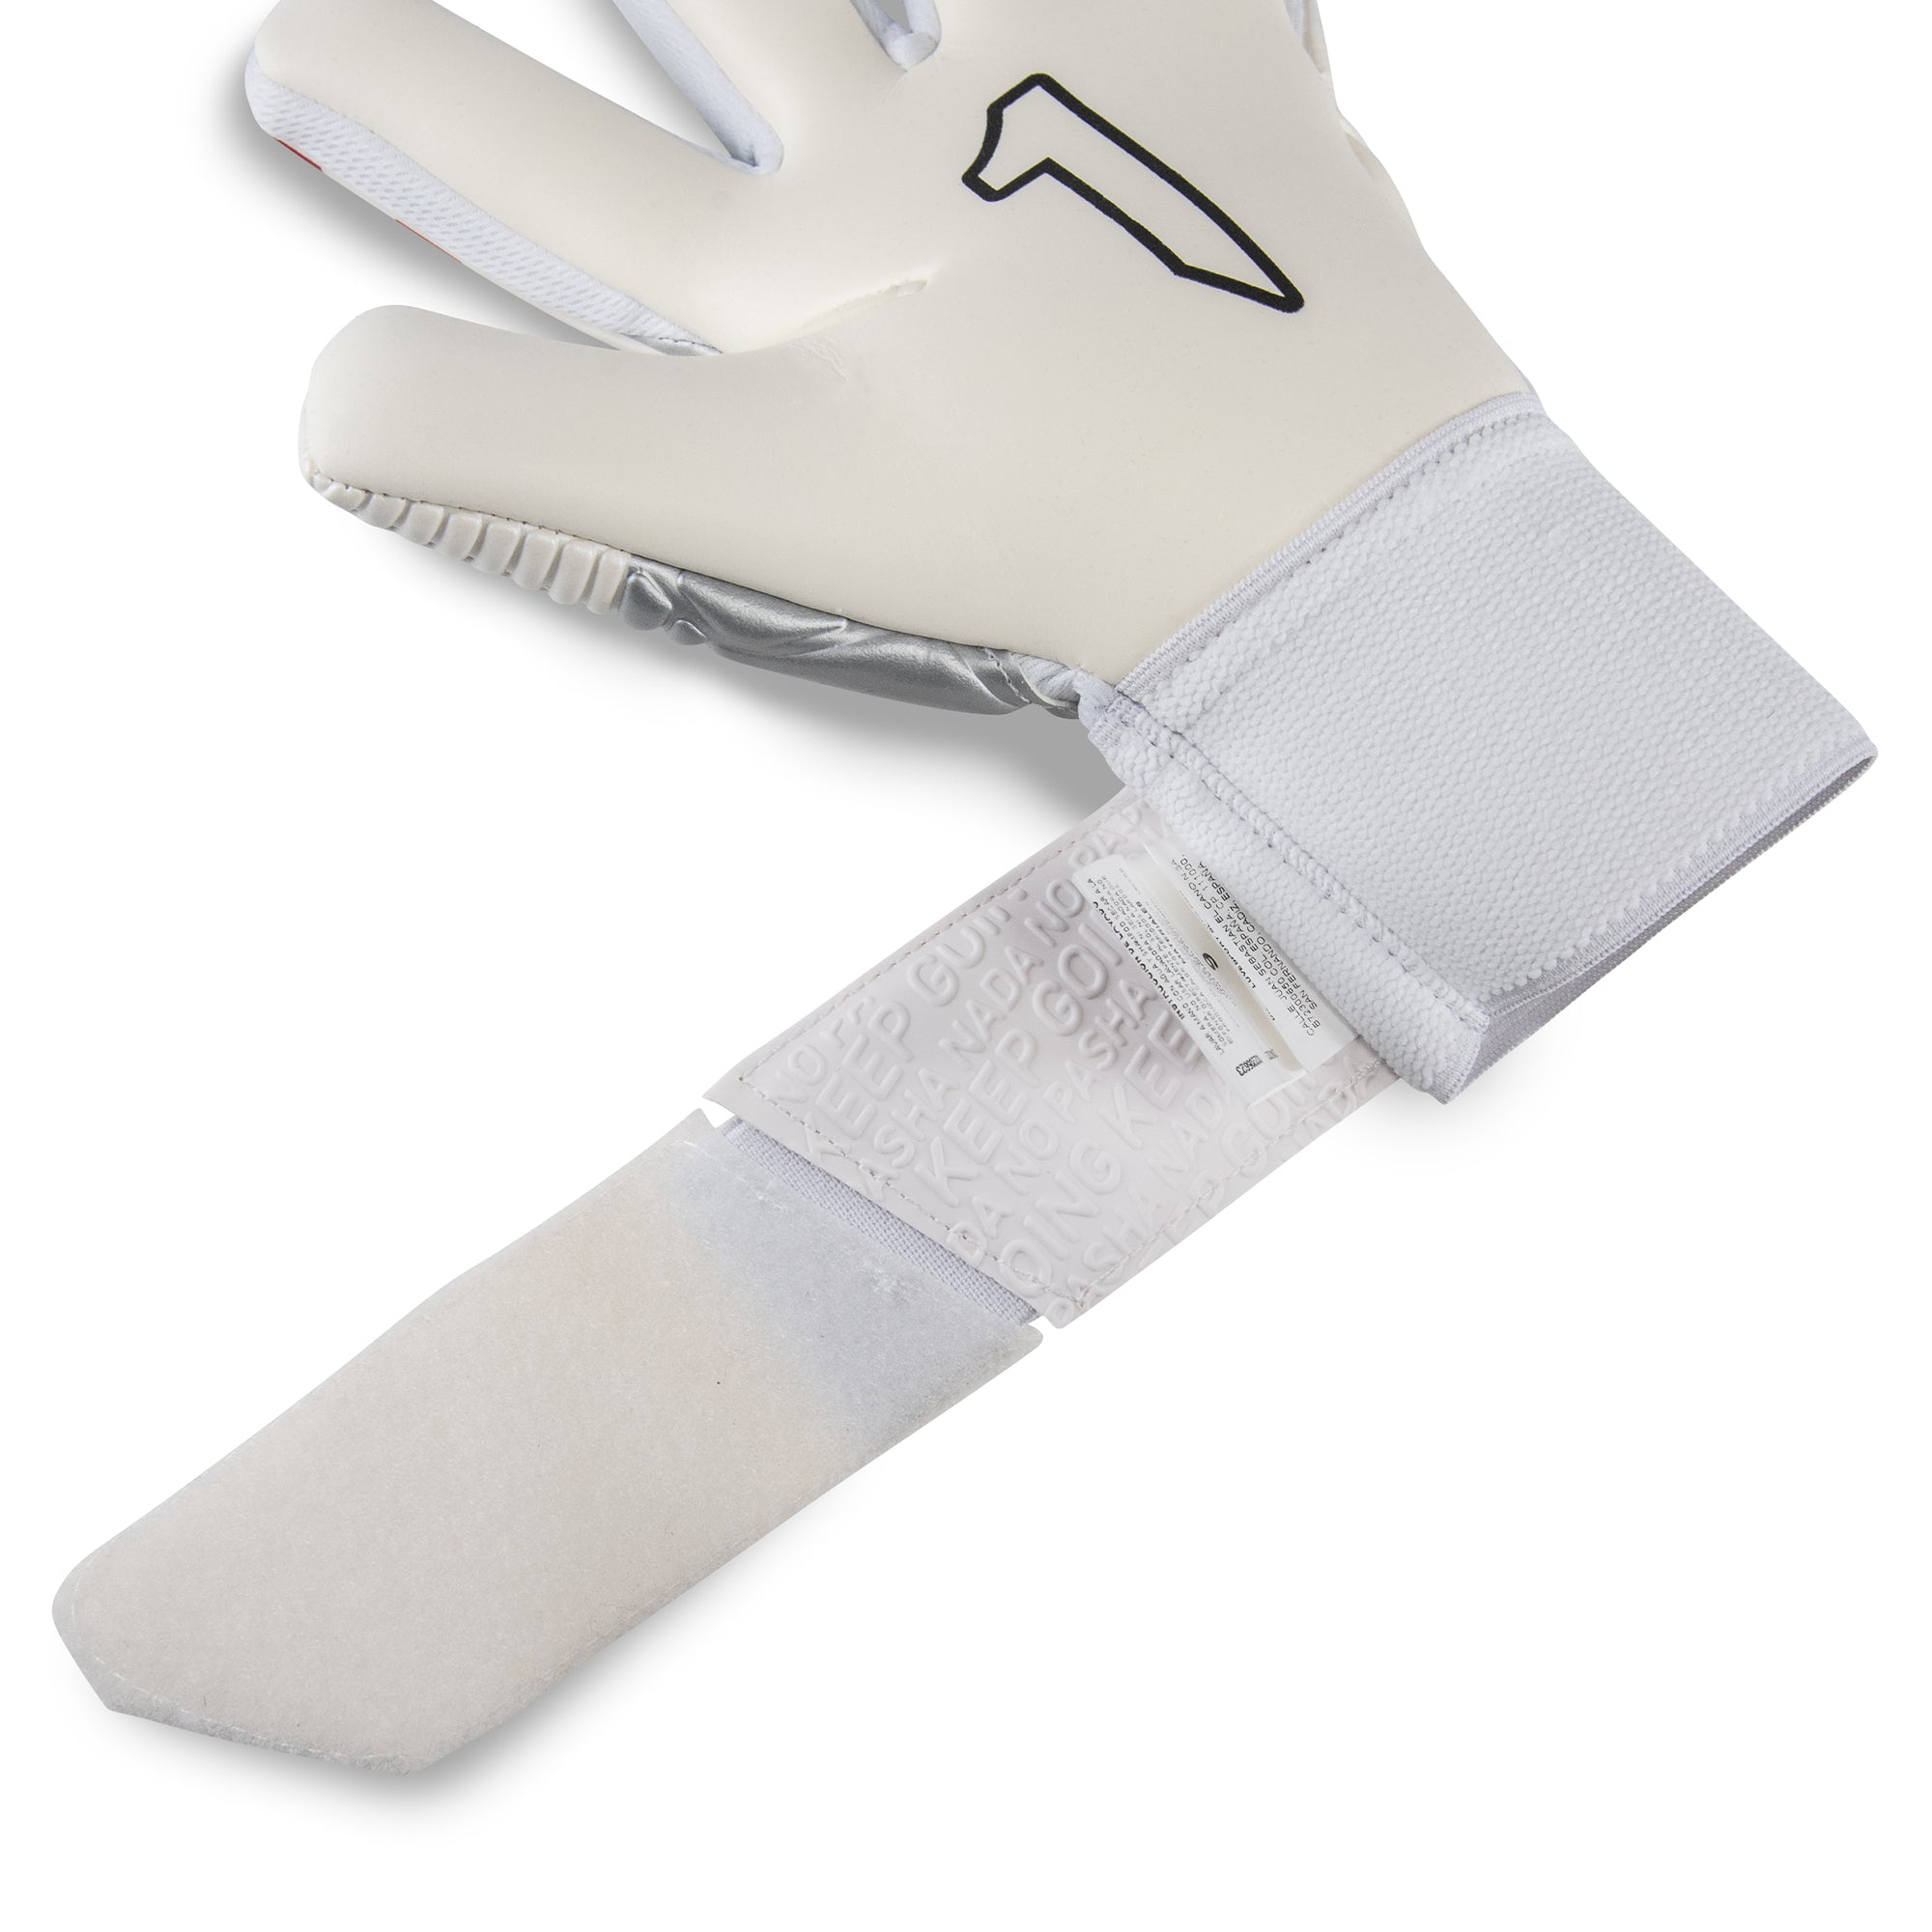 Rinat Meta GK SPINES (Finger Protection) Goalkeeper Glove